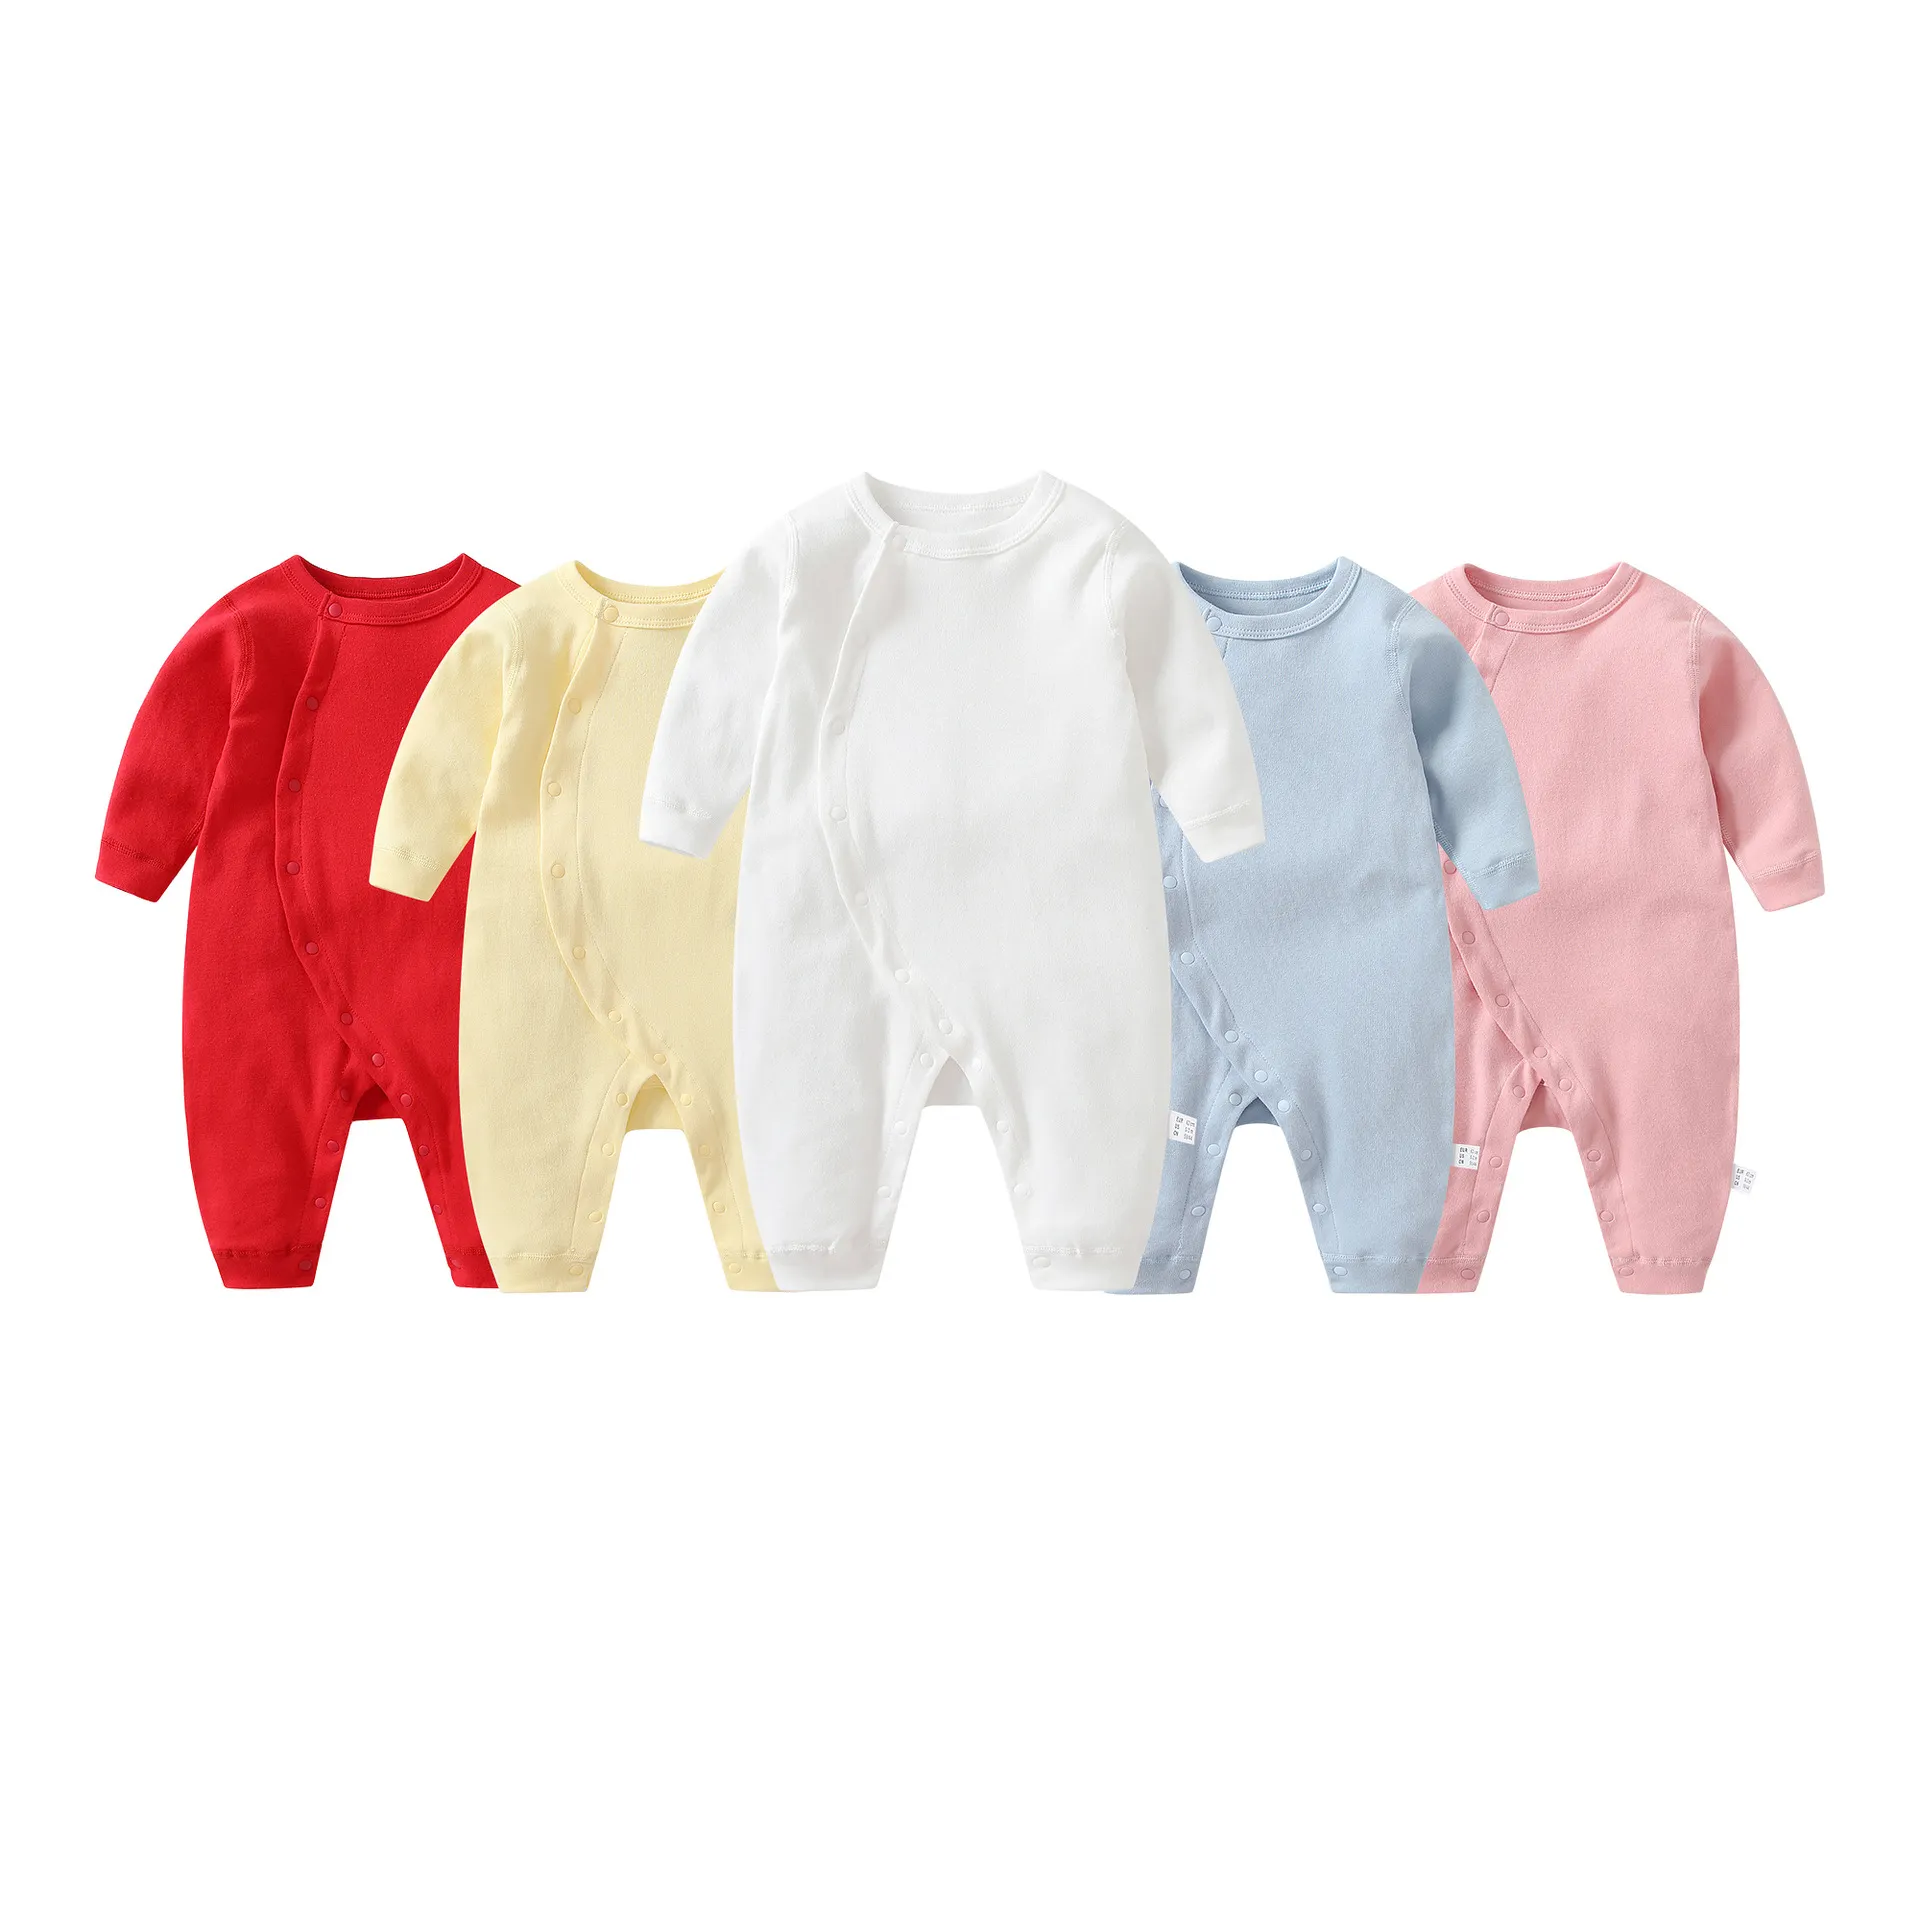 Recién Nacido ropa de bebé niña barata 18-24 meses artículo de bebé recién nacido 12 meses ropa de algodón para niñas